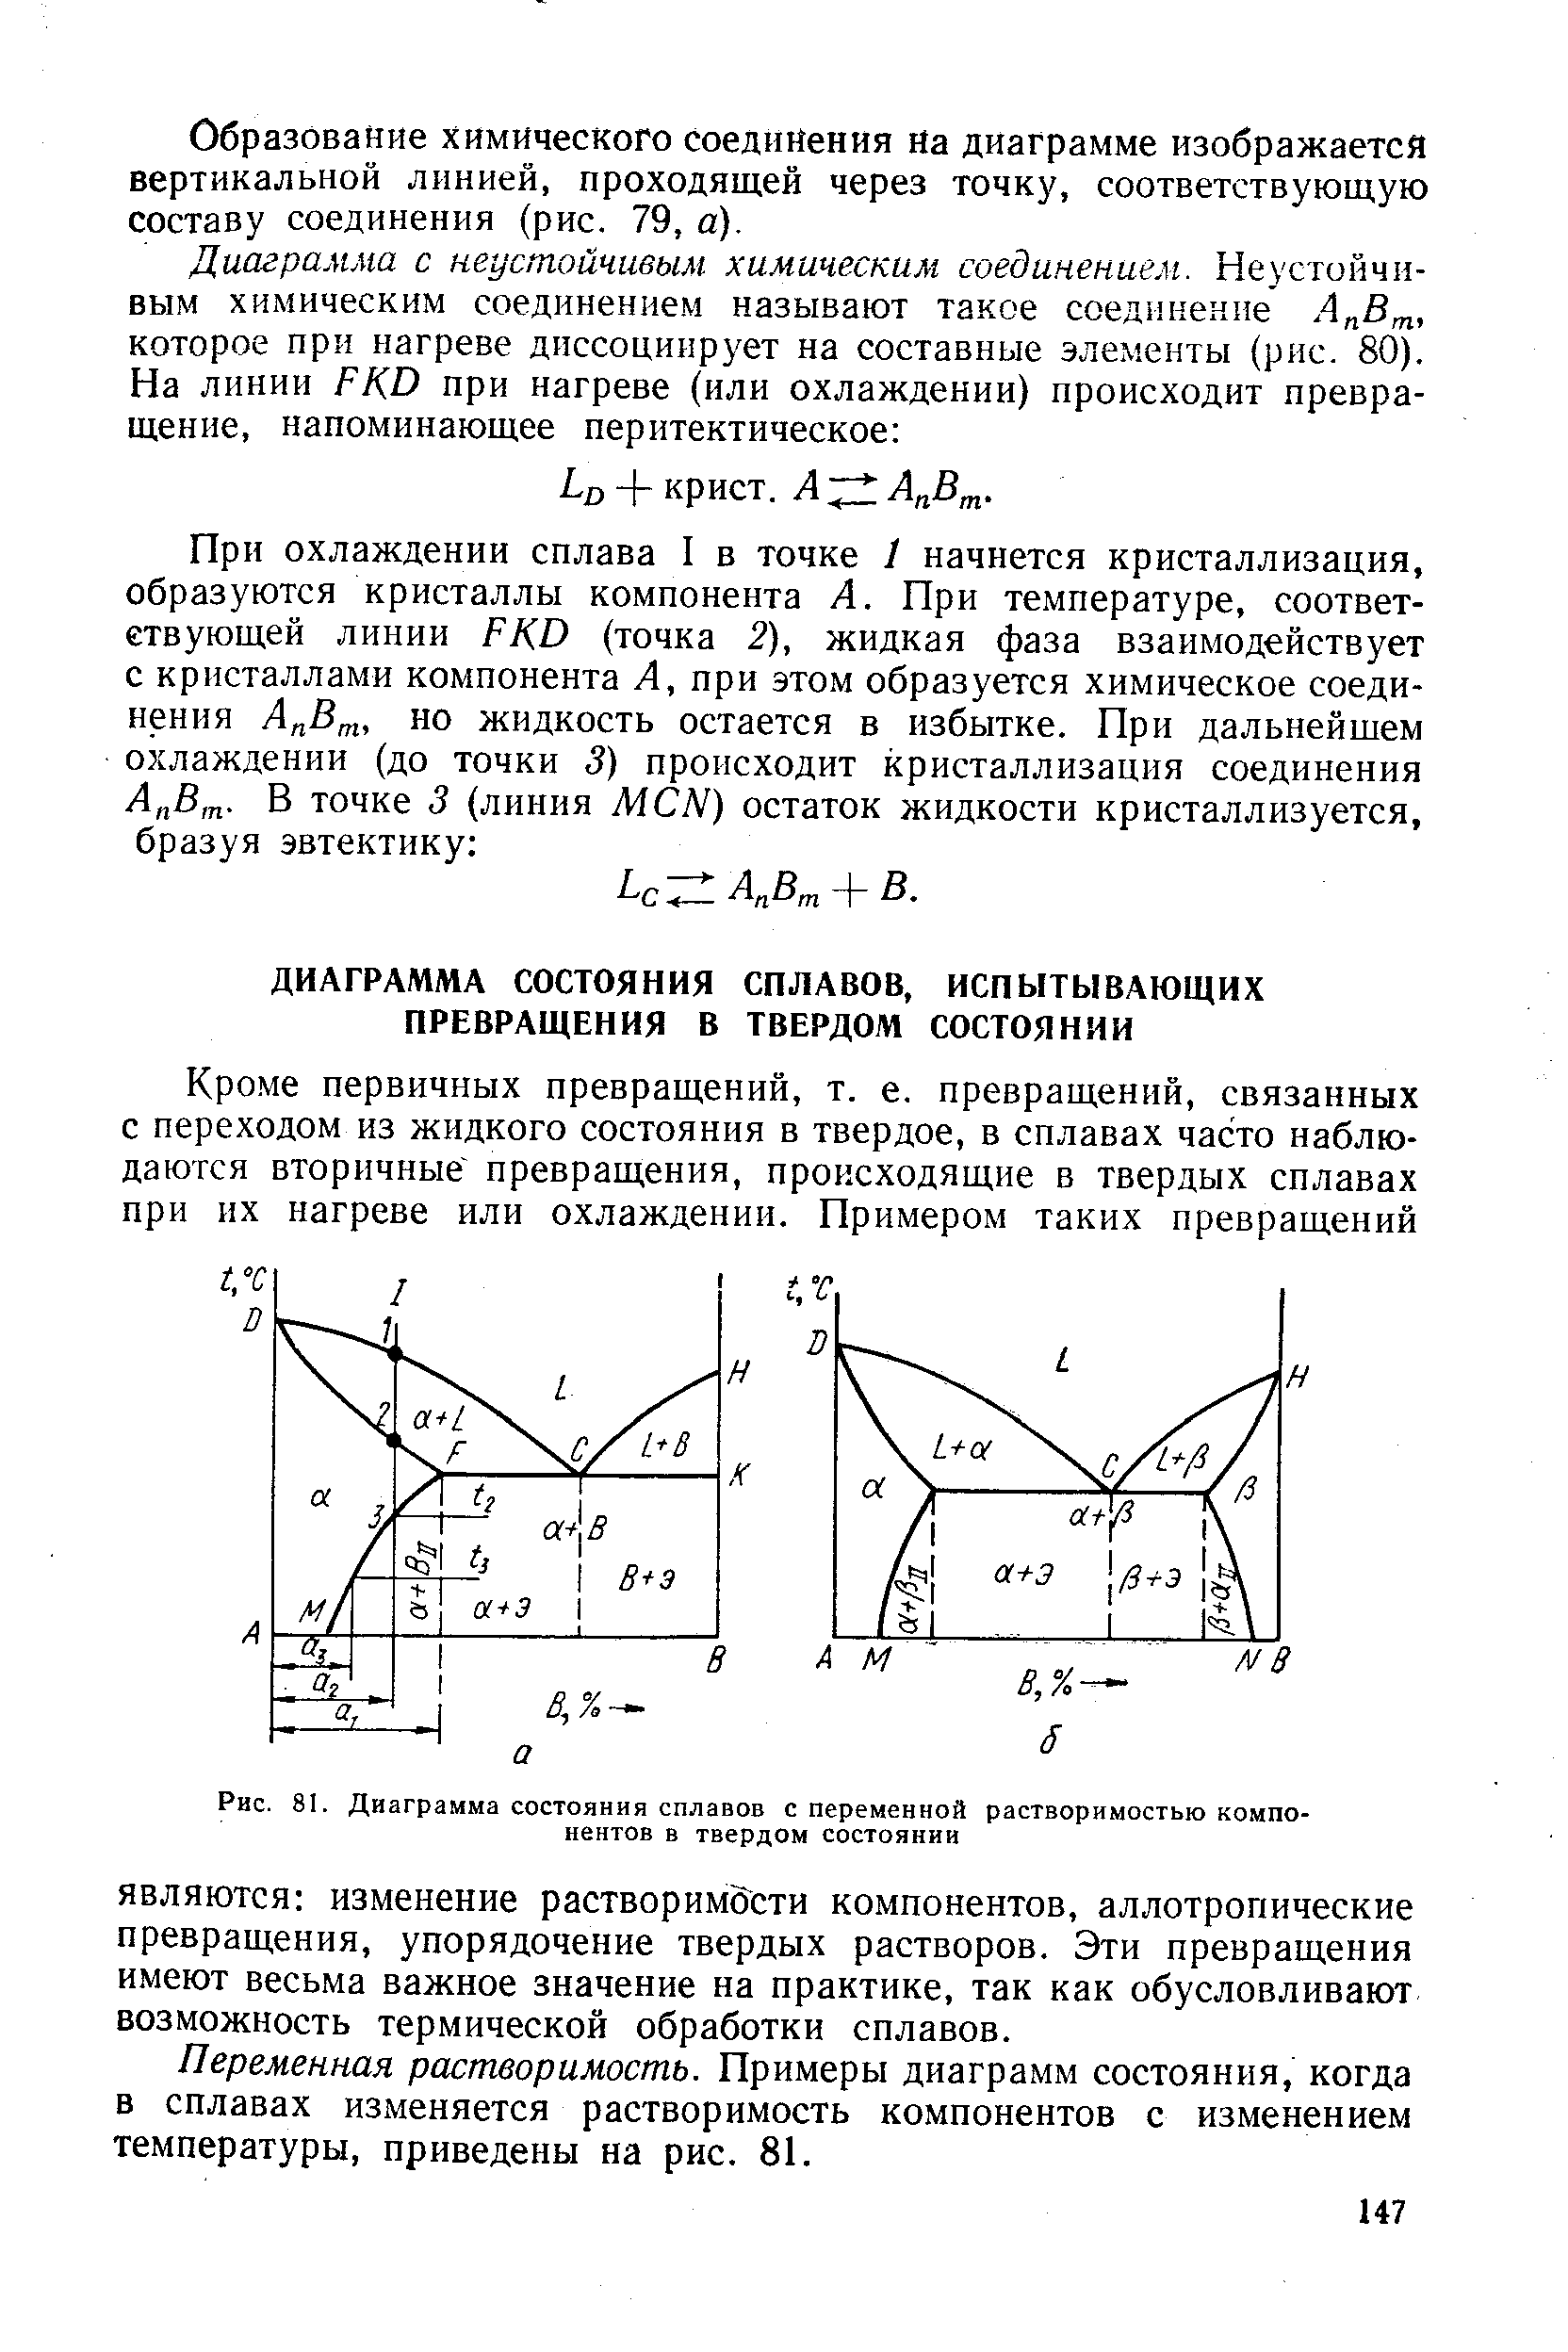 Переменная растворимость. Примеры диаграмм состояния, когда в сплавах изменяется растворимость компонентов с изменением температуры, приведены на рис. 81.
